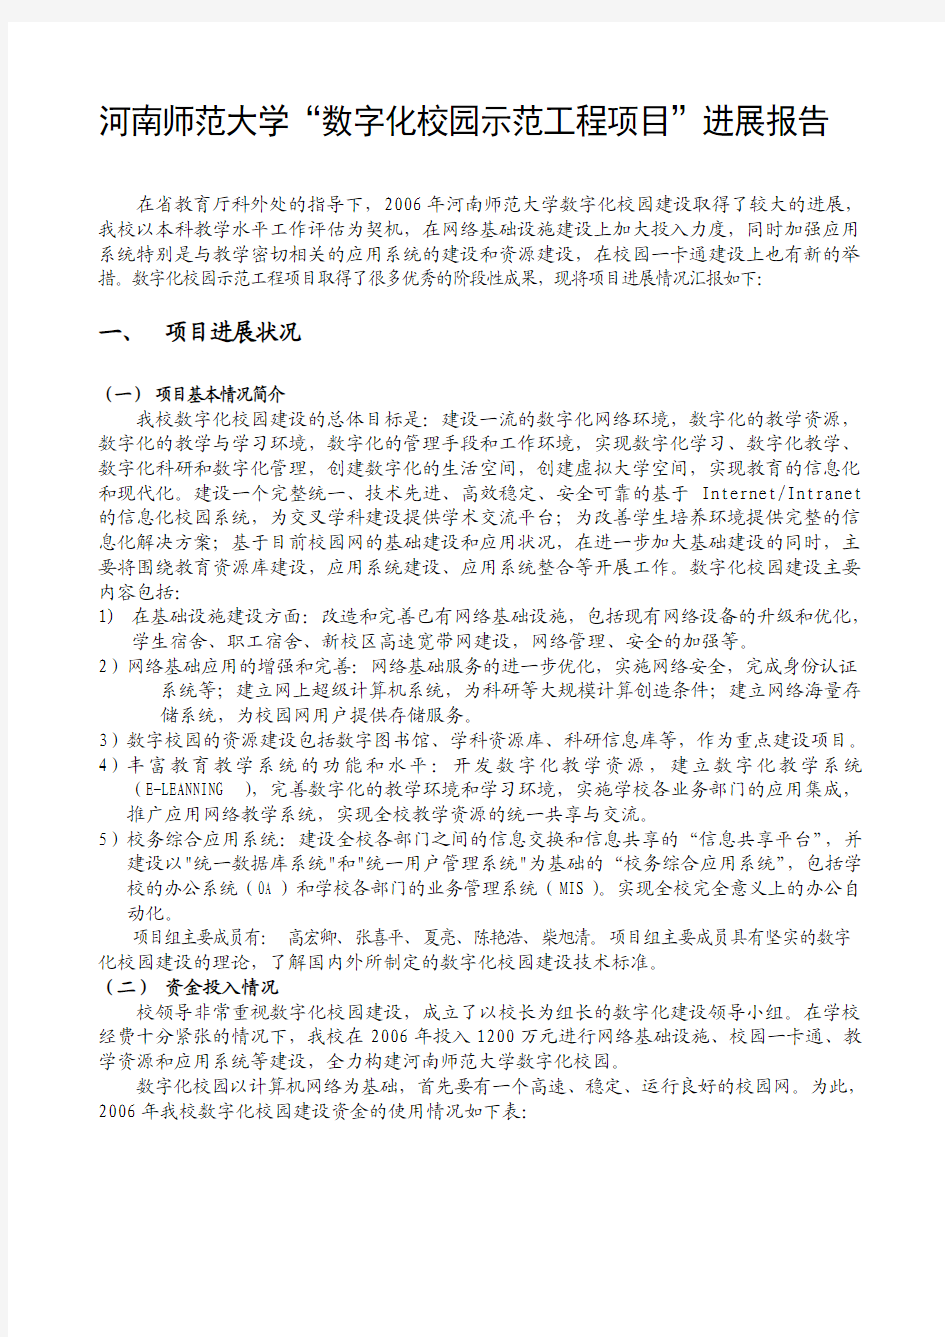 河南师范大学“数字化校园示范工程项目”进展报告